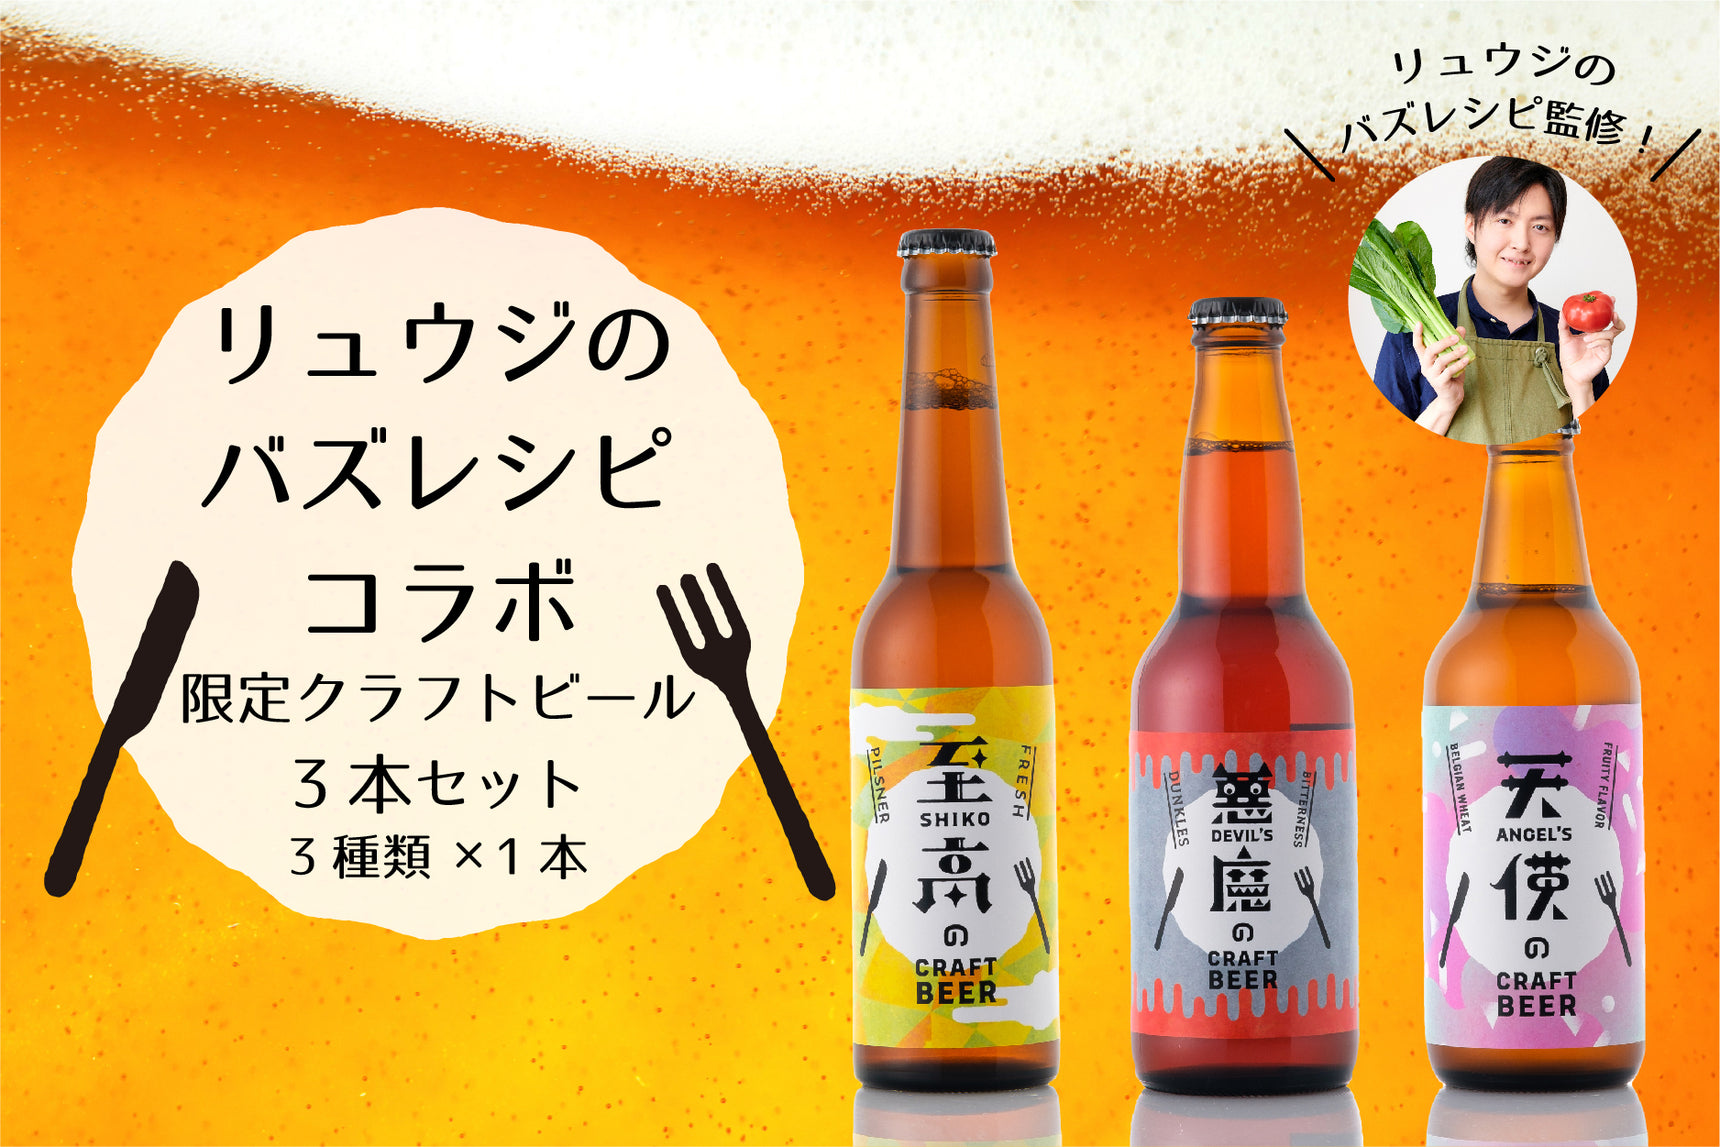 【リュウジのバズレシピコラボ限定】クラフトビール3本セット